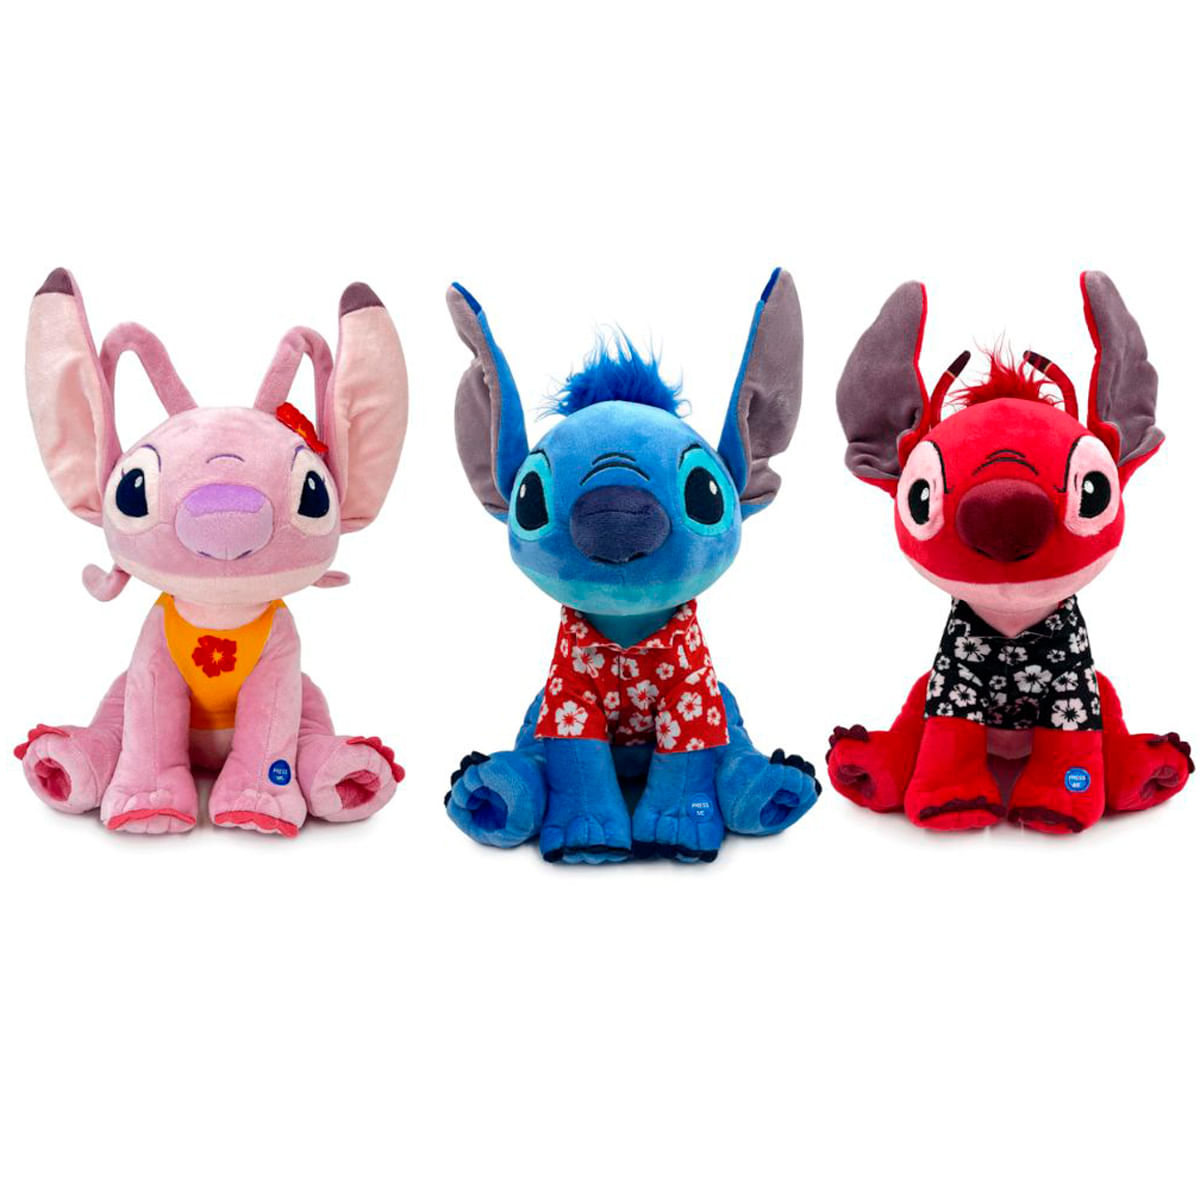 Disney Lilo and Stitch peluche Stitch con sonidos desde 11,50 €